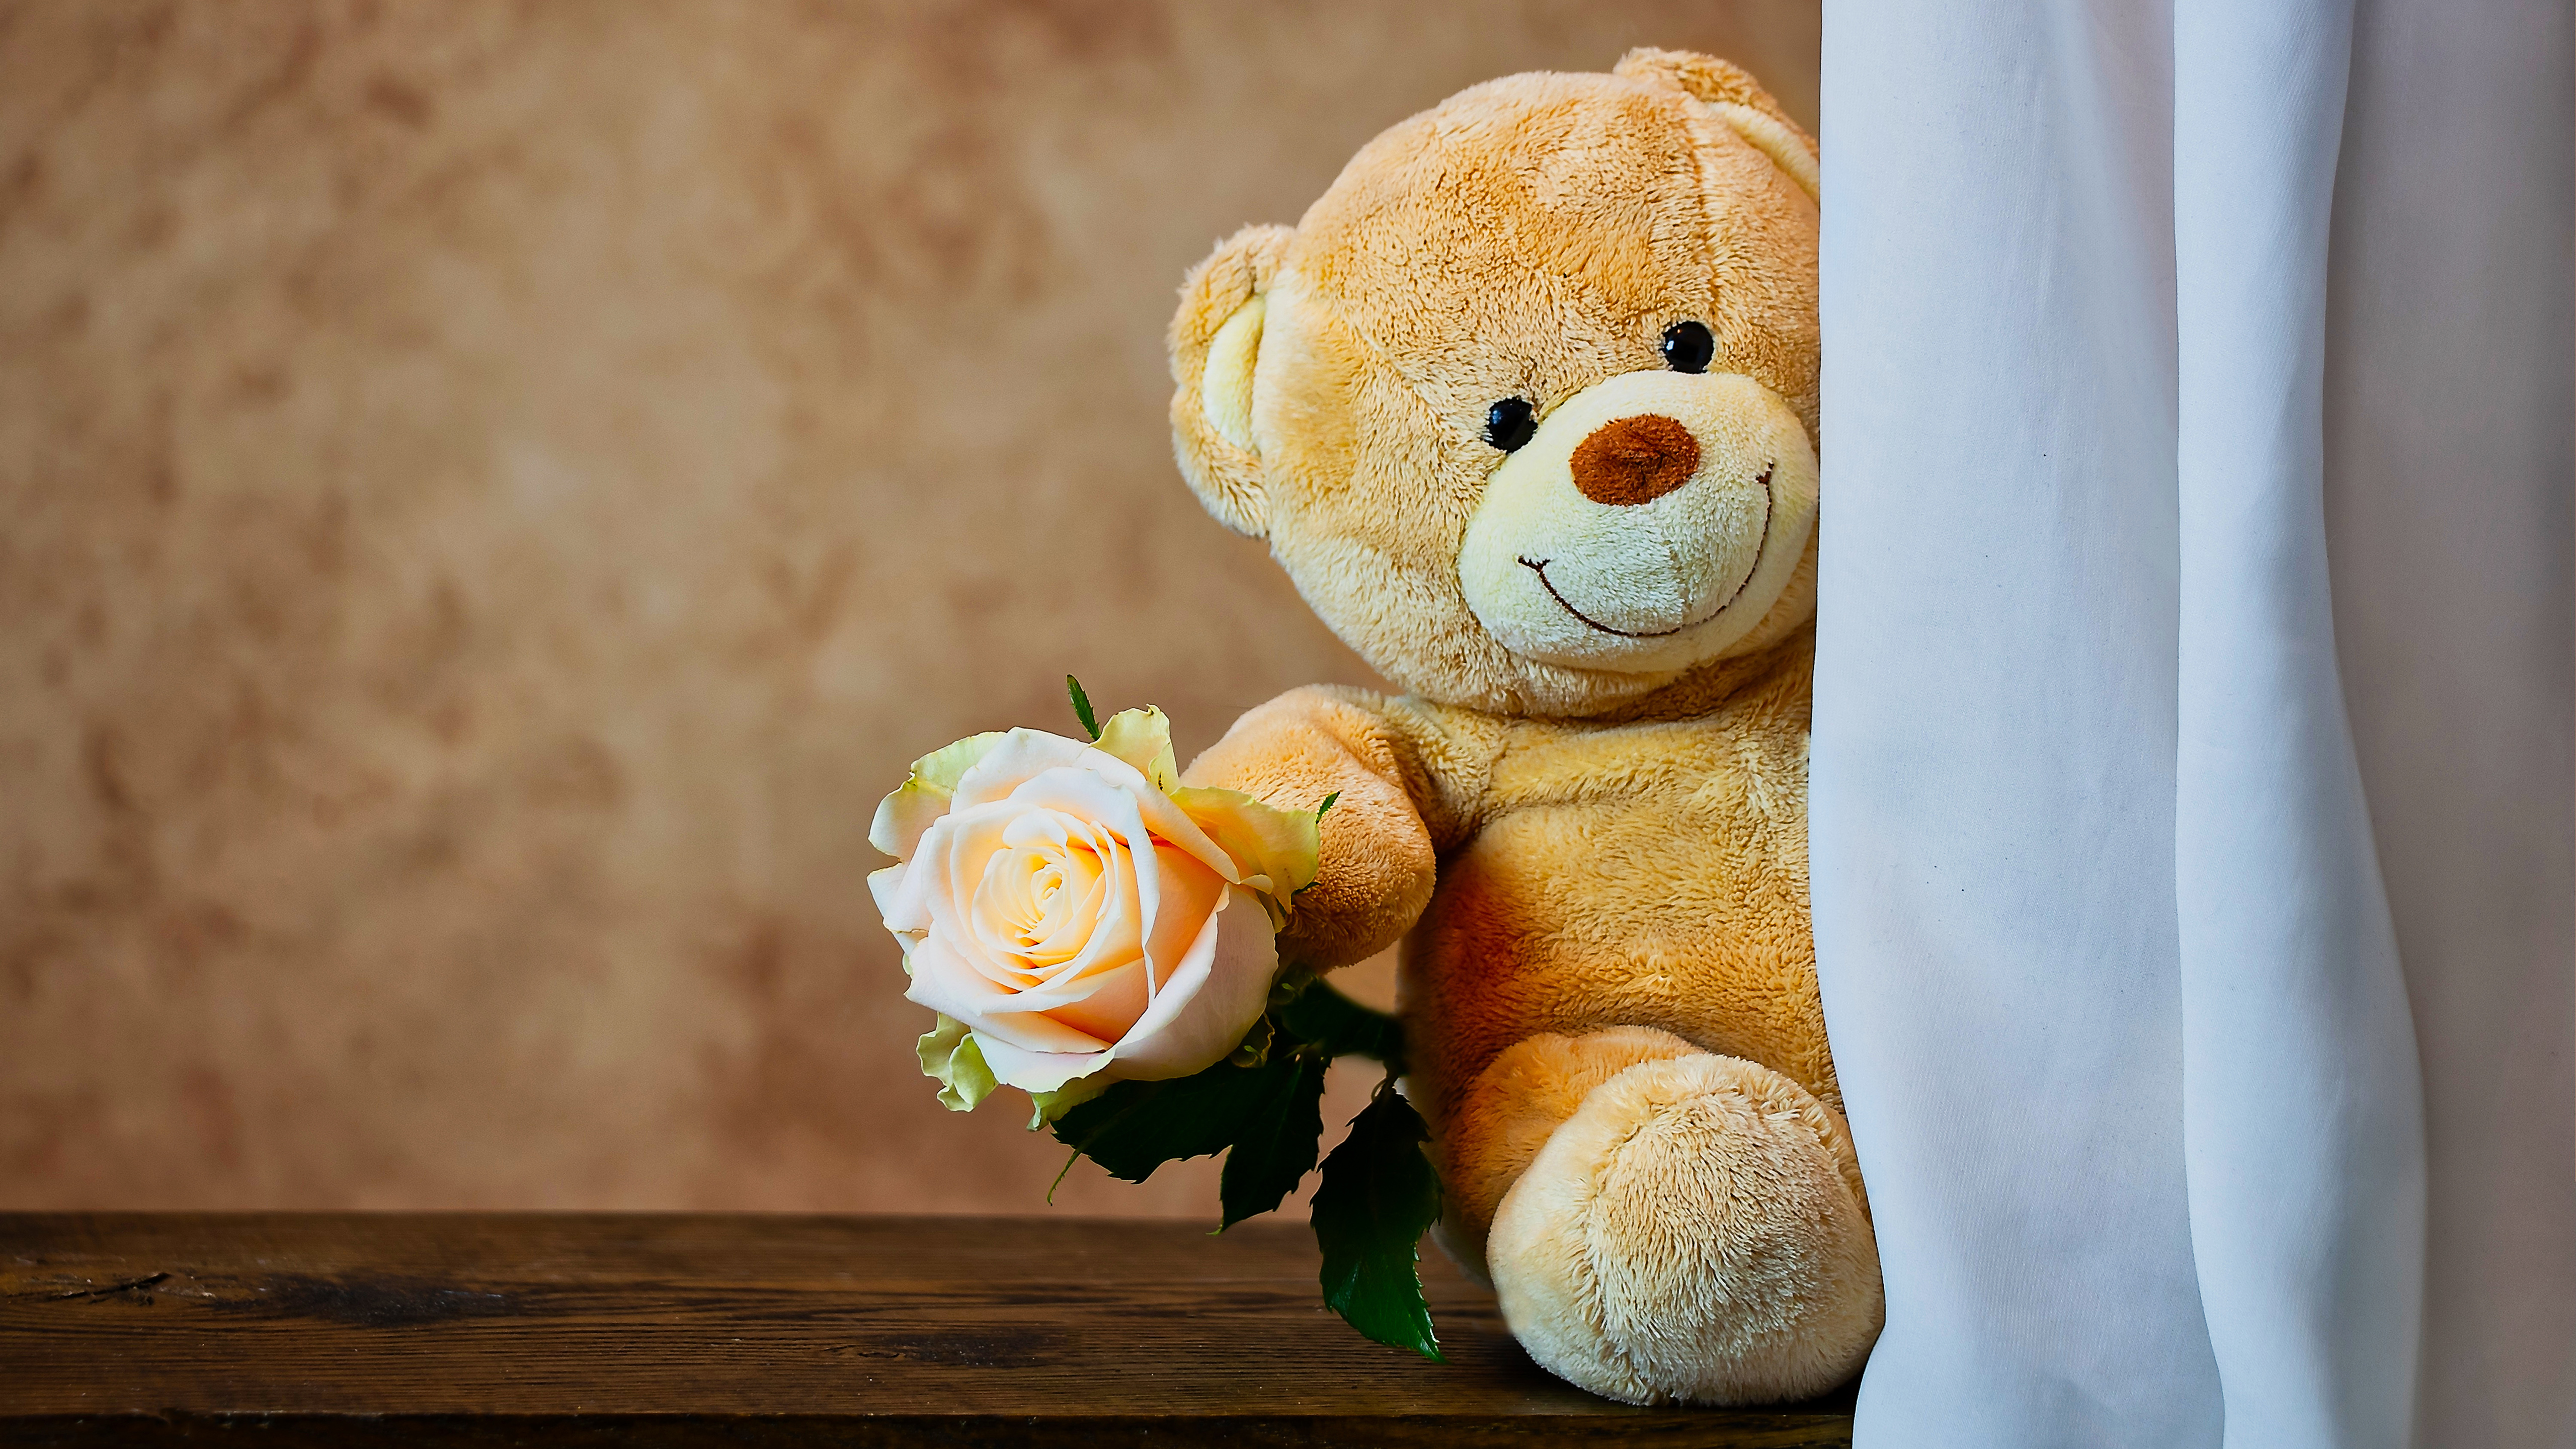 Cute Teddy Bear with Rose